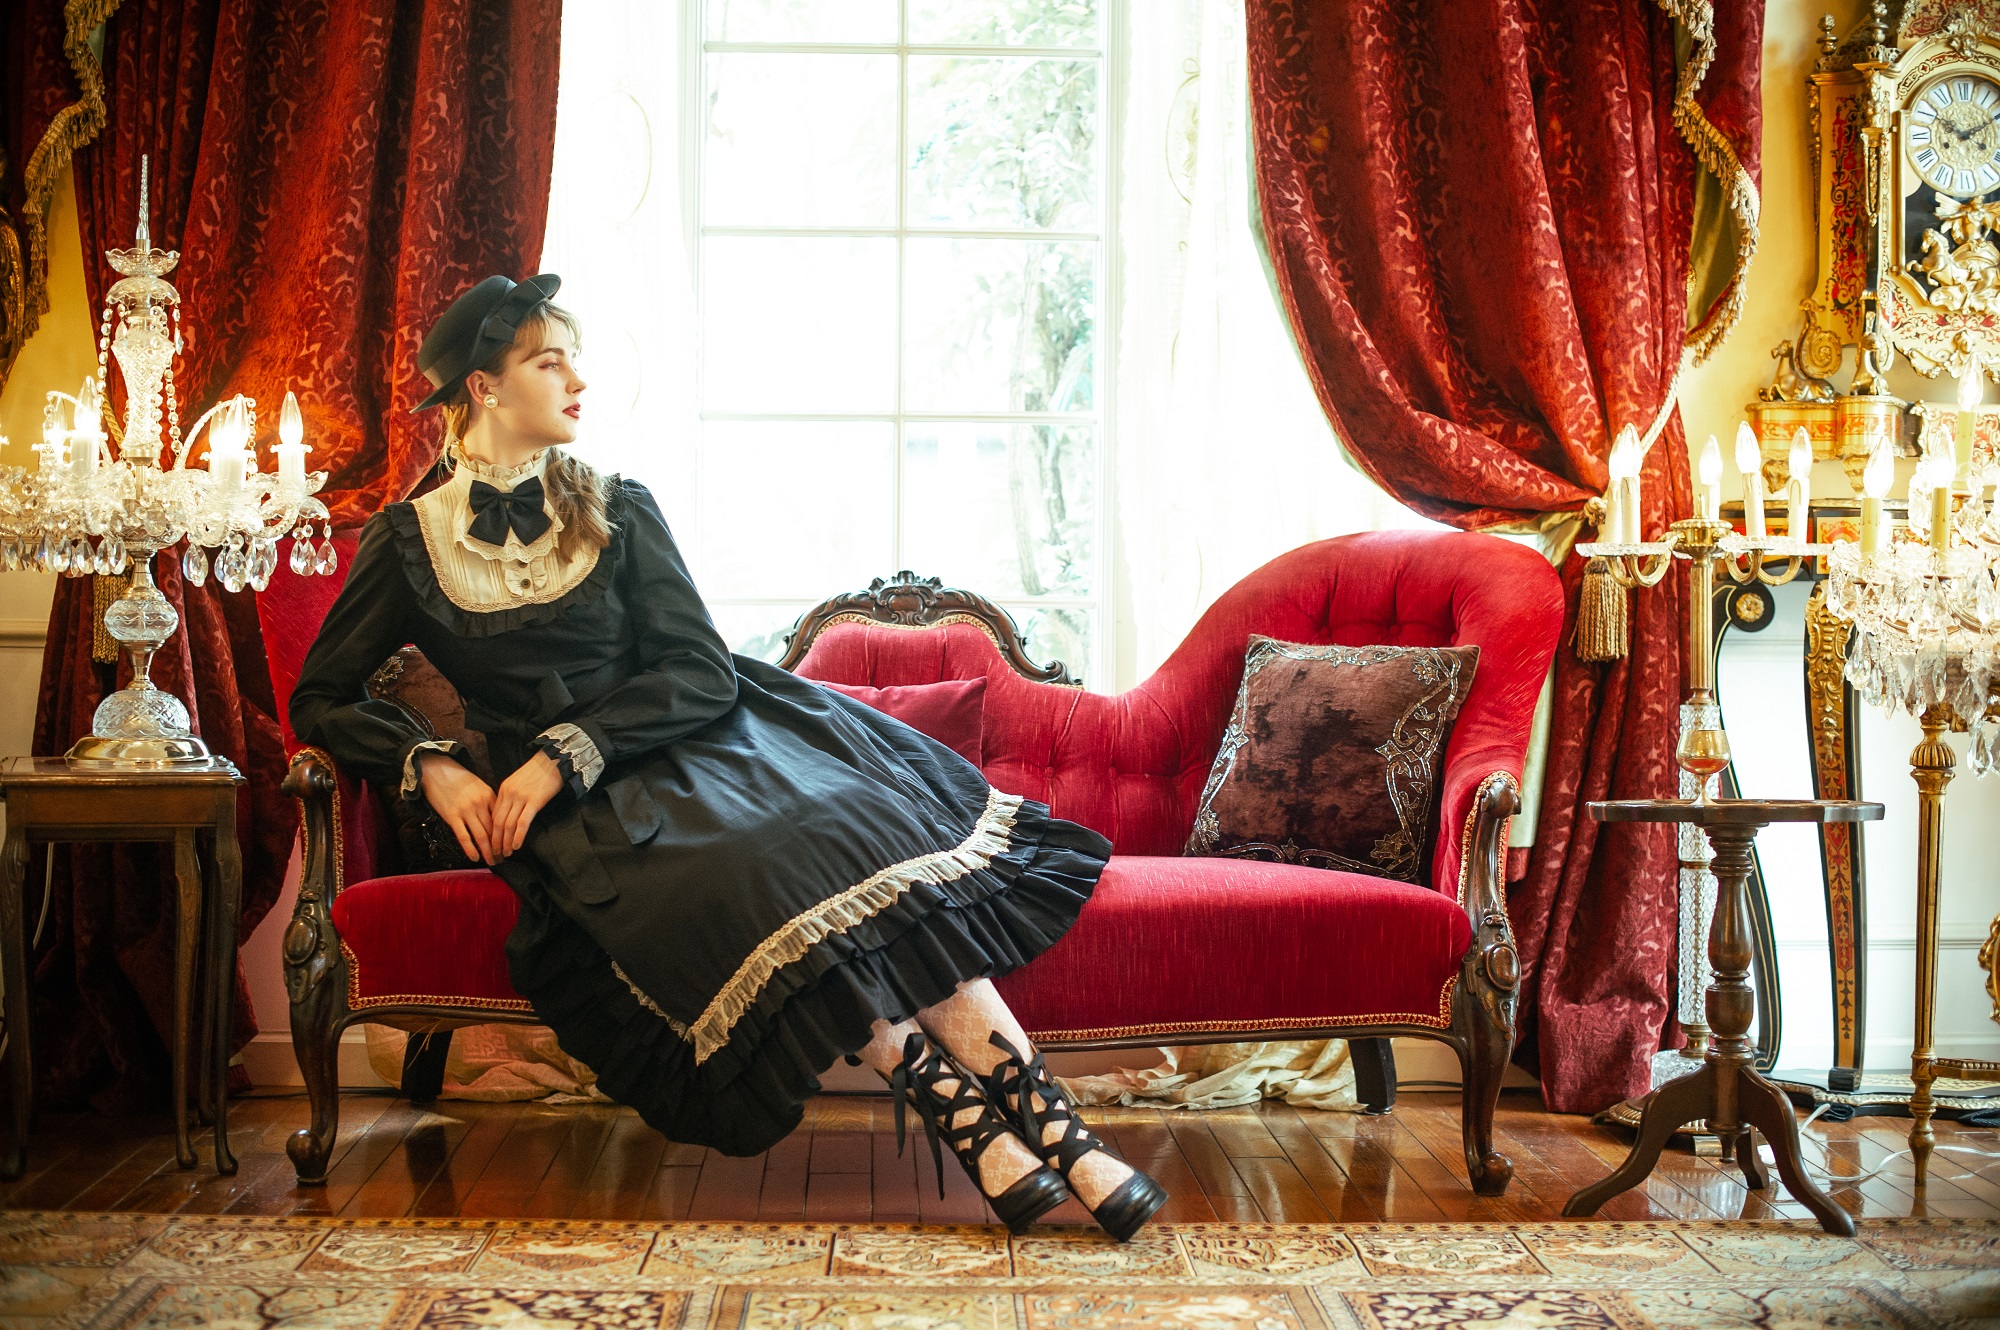 ロリィタファッションブランド『Victorian maiden（ヴィクトリアン 